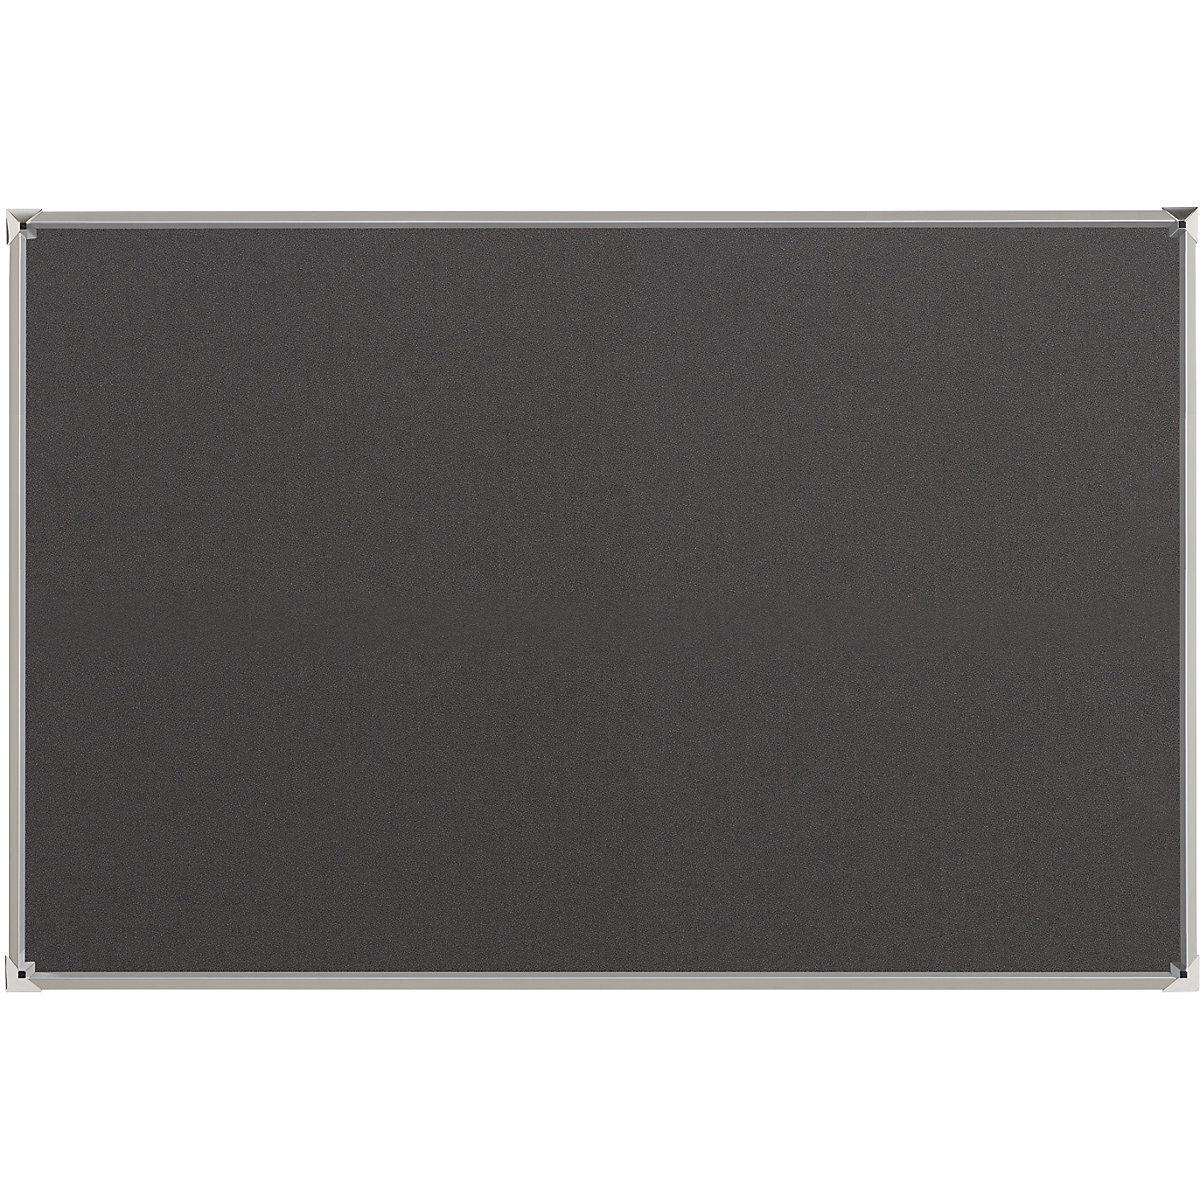 Oglasna ploča s aluminijskim okvirom – eurokraft pro, presvlaka od tkanine, u sivoj boji, ŠxV 1500 x 1000 mm-6